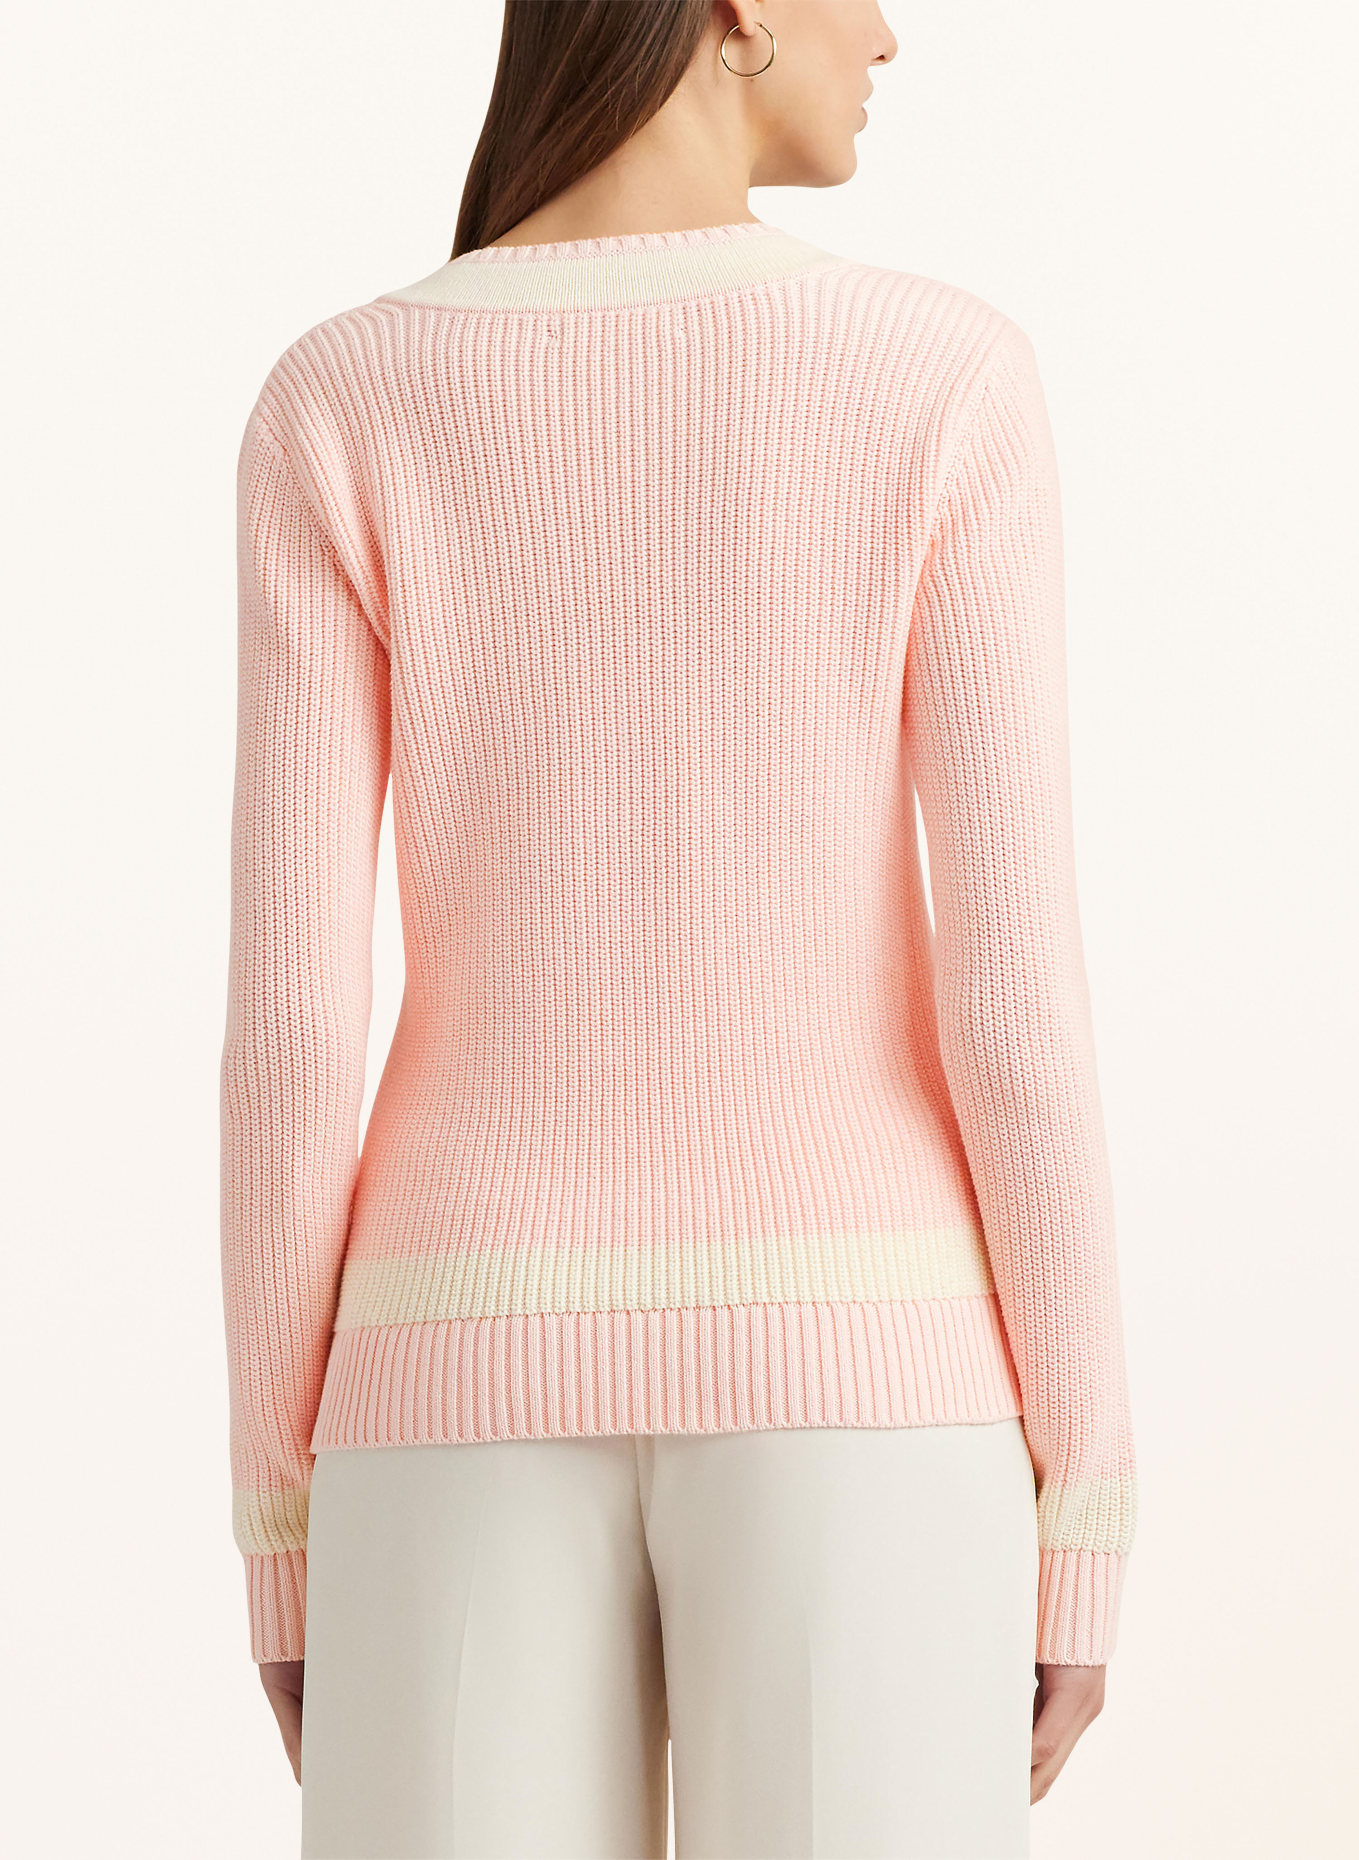 LAUREN RALPH LAUREN Sweater, Color: LIGHT PINK/ CREAM (Image 3)